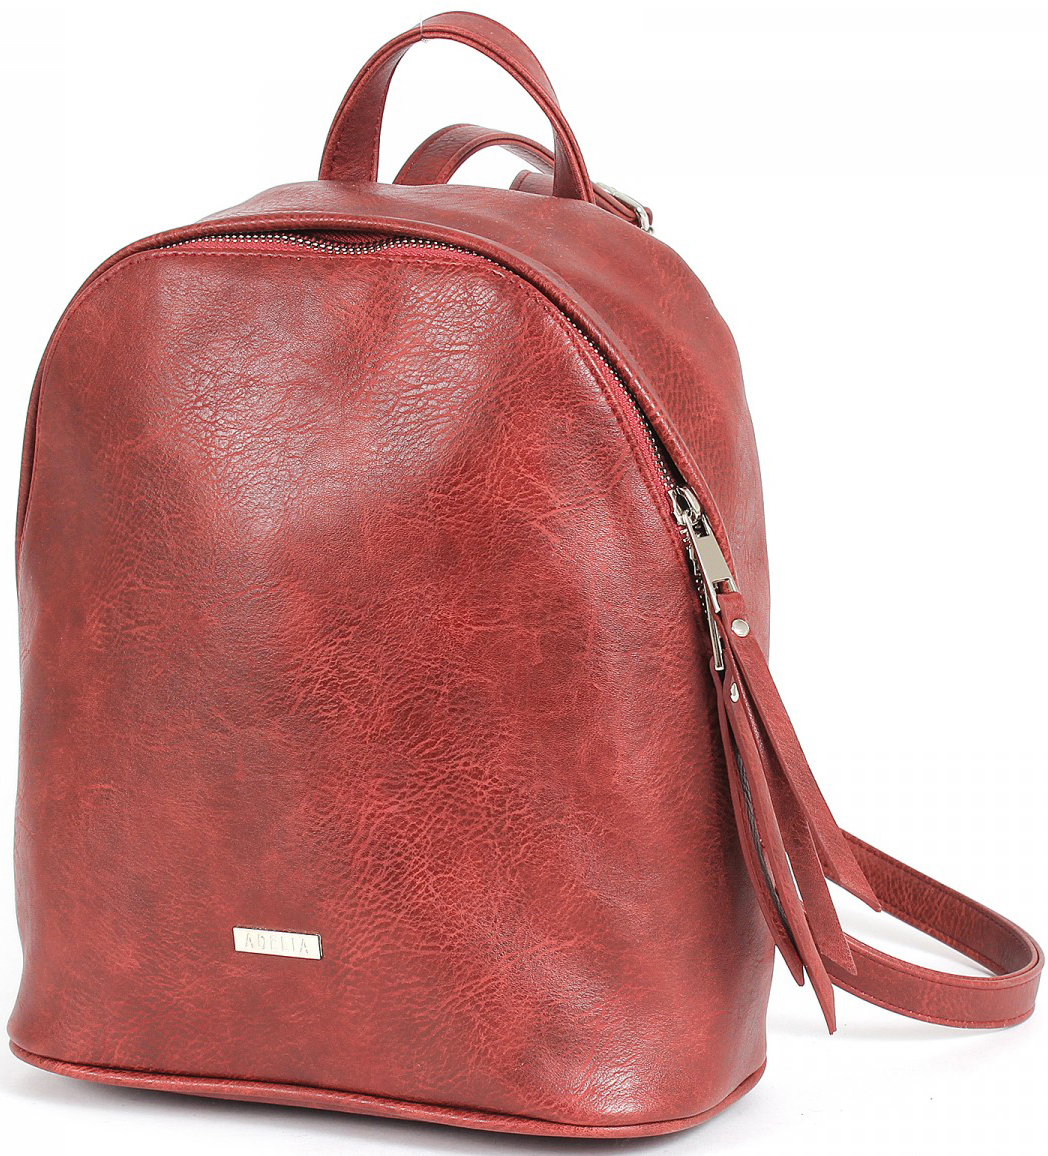 Рюкзак женский Adelia, цвет: бордовый. 196227